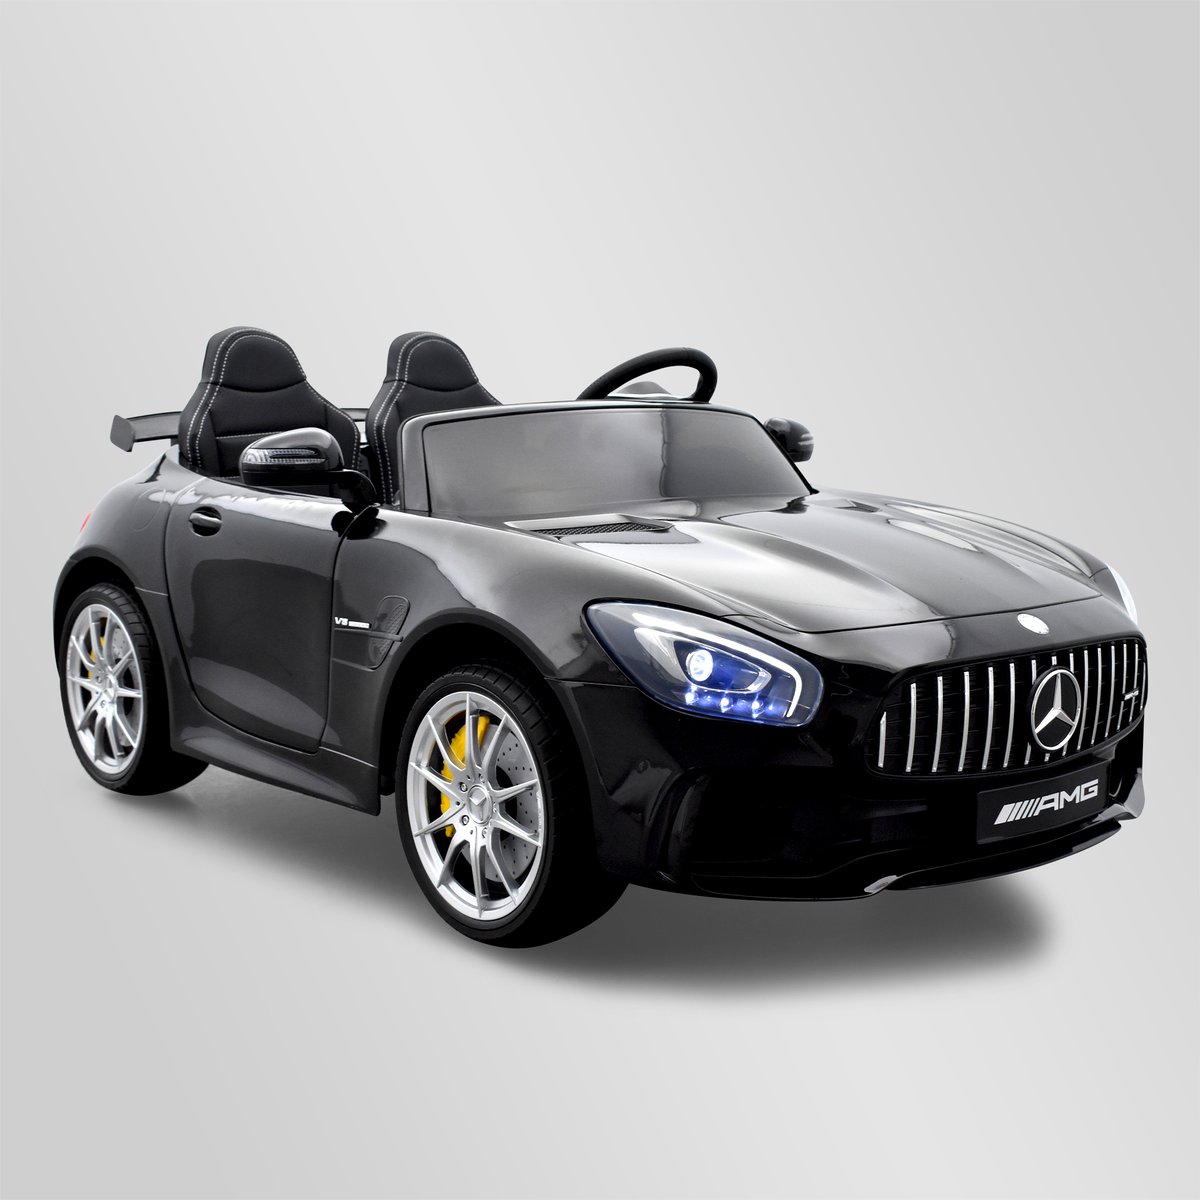 Jouet pour enfant - Mercedes AMG électrique